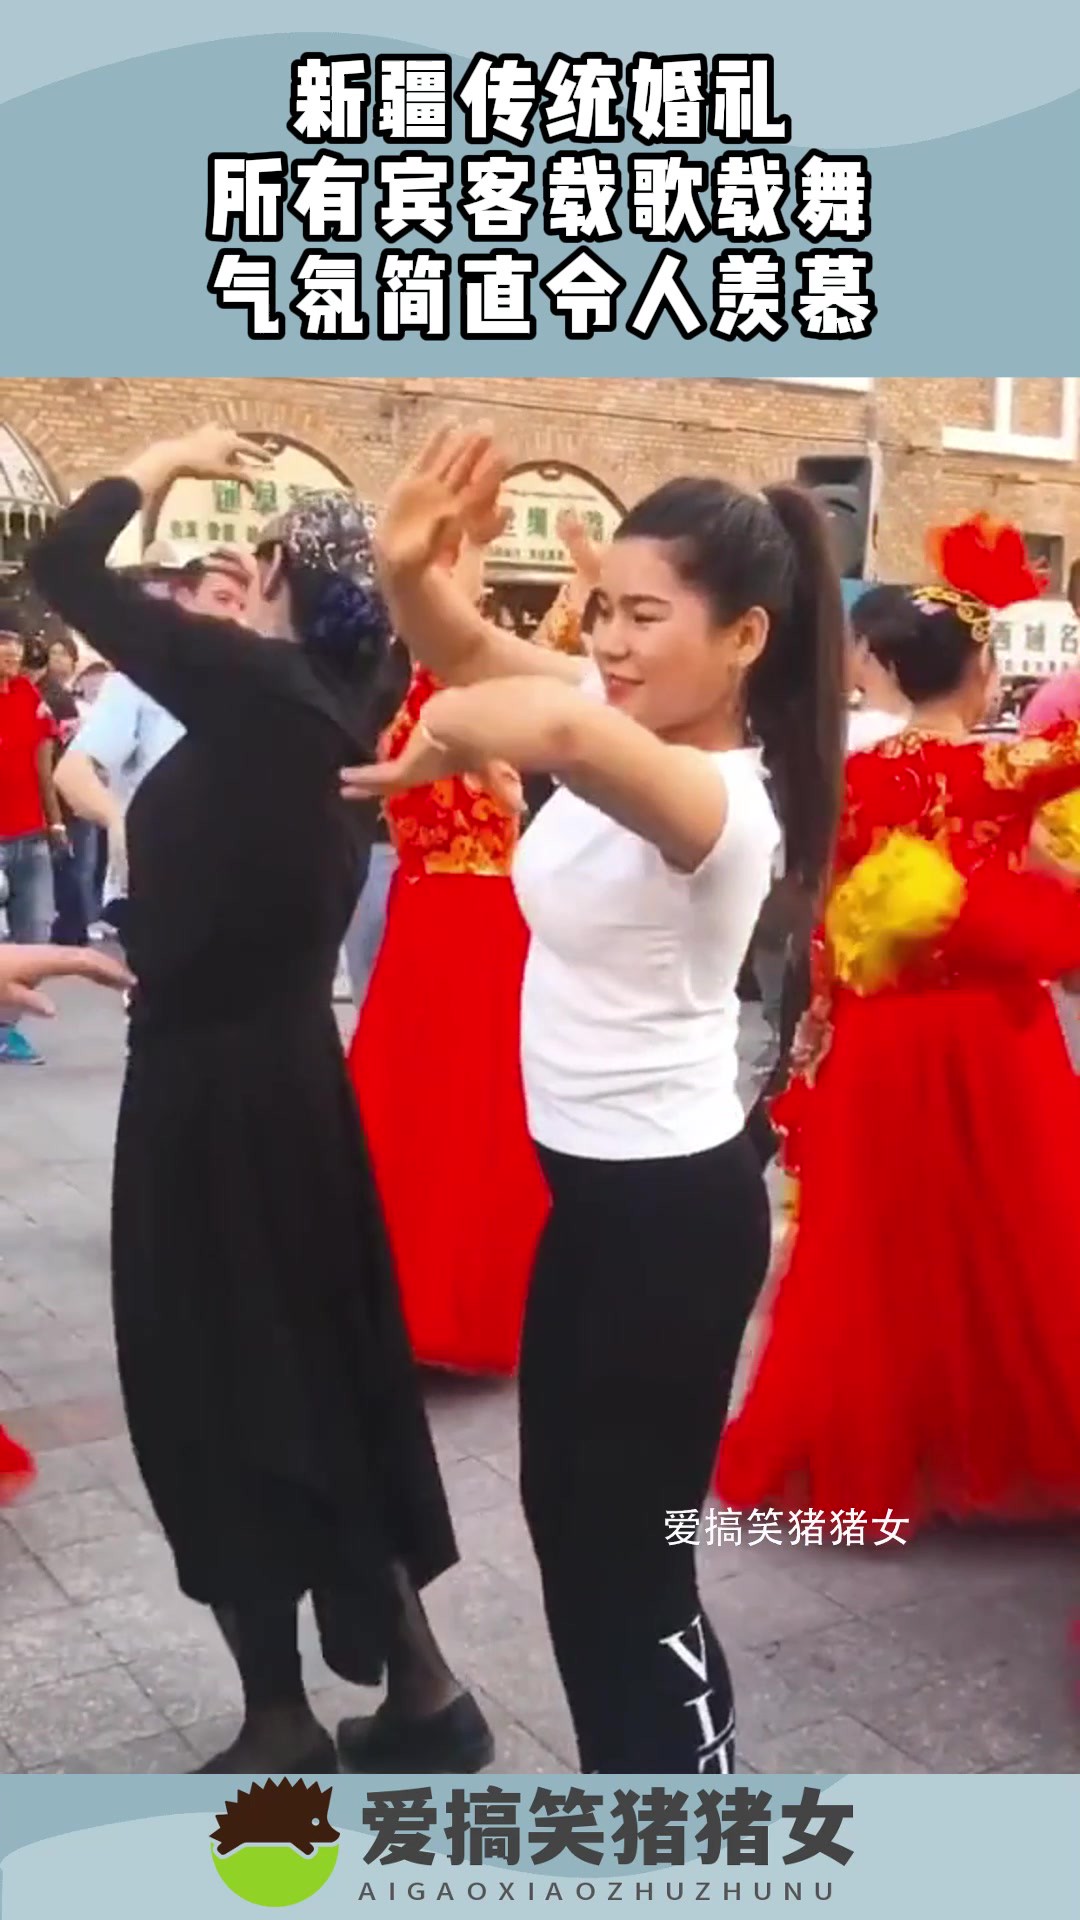 新疆传统婚礼，所有宾客载歌载舞，气氛简直令人羡慕#搞笑 #奇趣 #社会 #搞笑段子 